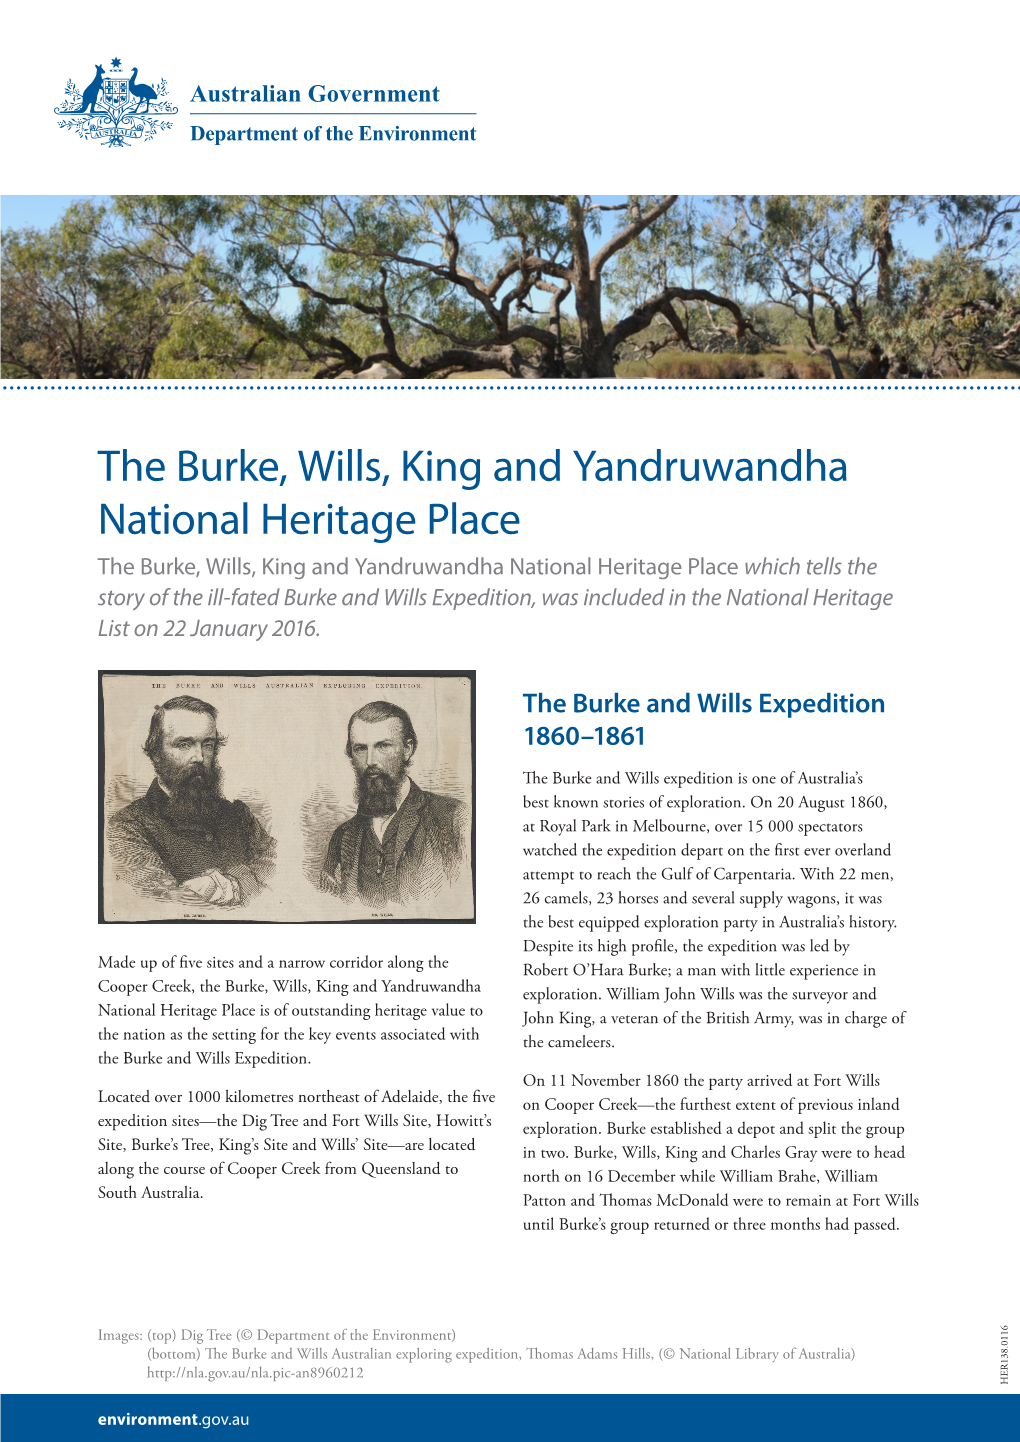 The Burke, Wills, King and Yandruwandha National Heritage